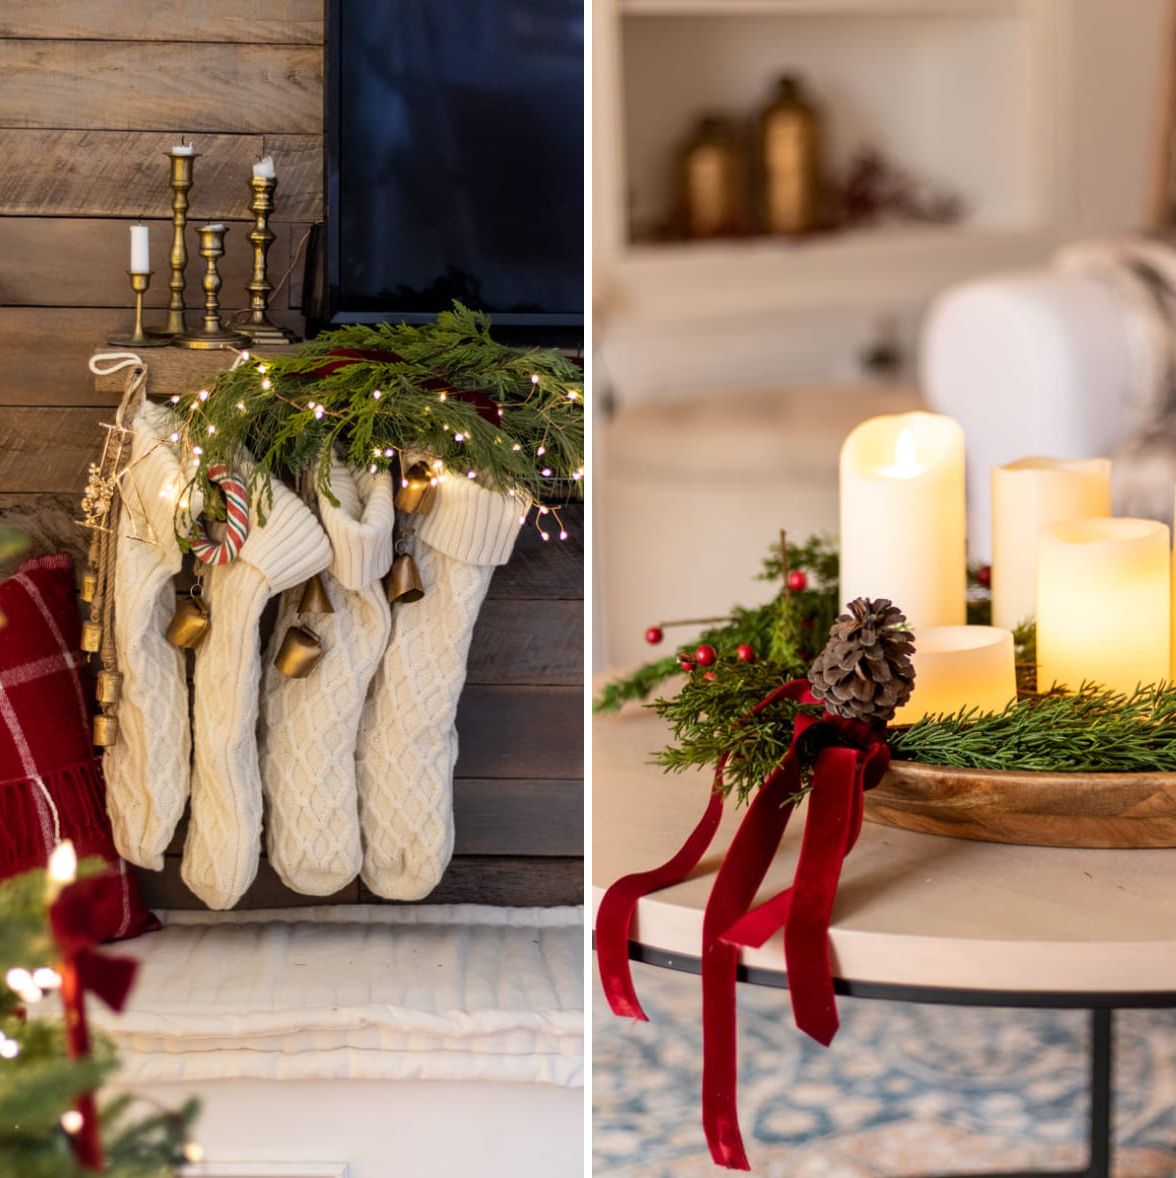 聖誕節；居家裝飾；聖誕布置；客廳；餐桌；臥室；聖誕樹；聖誕襪;黃勻薔